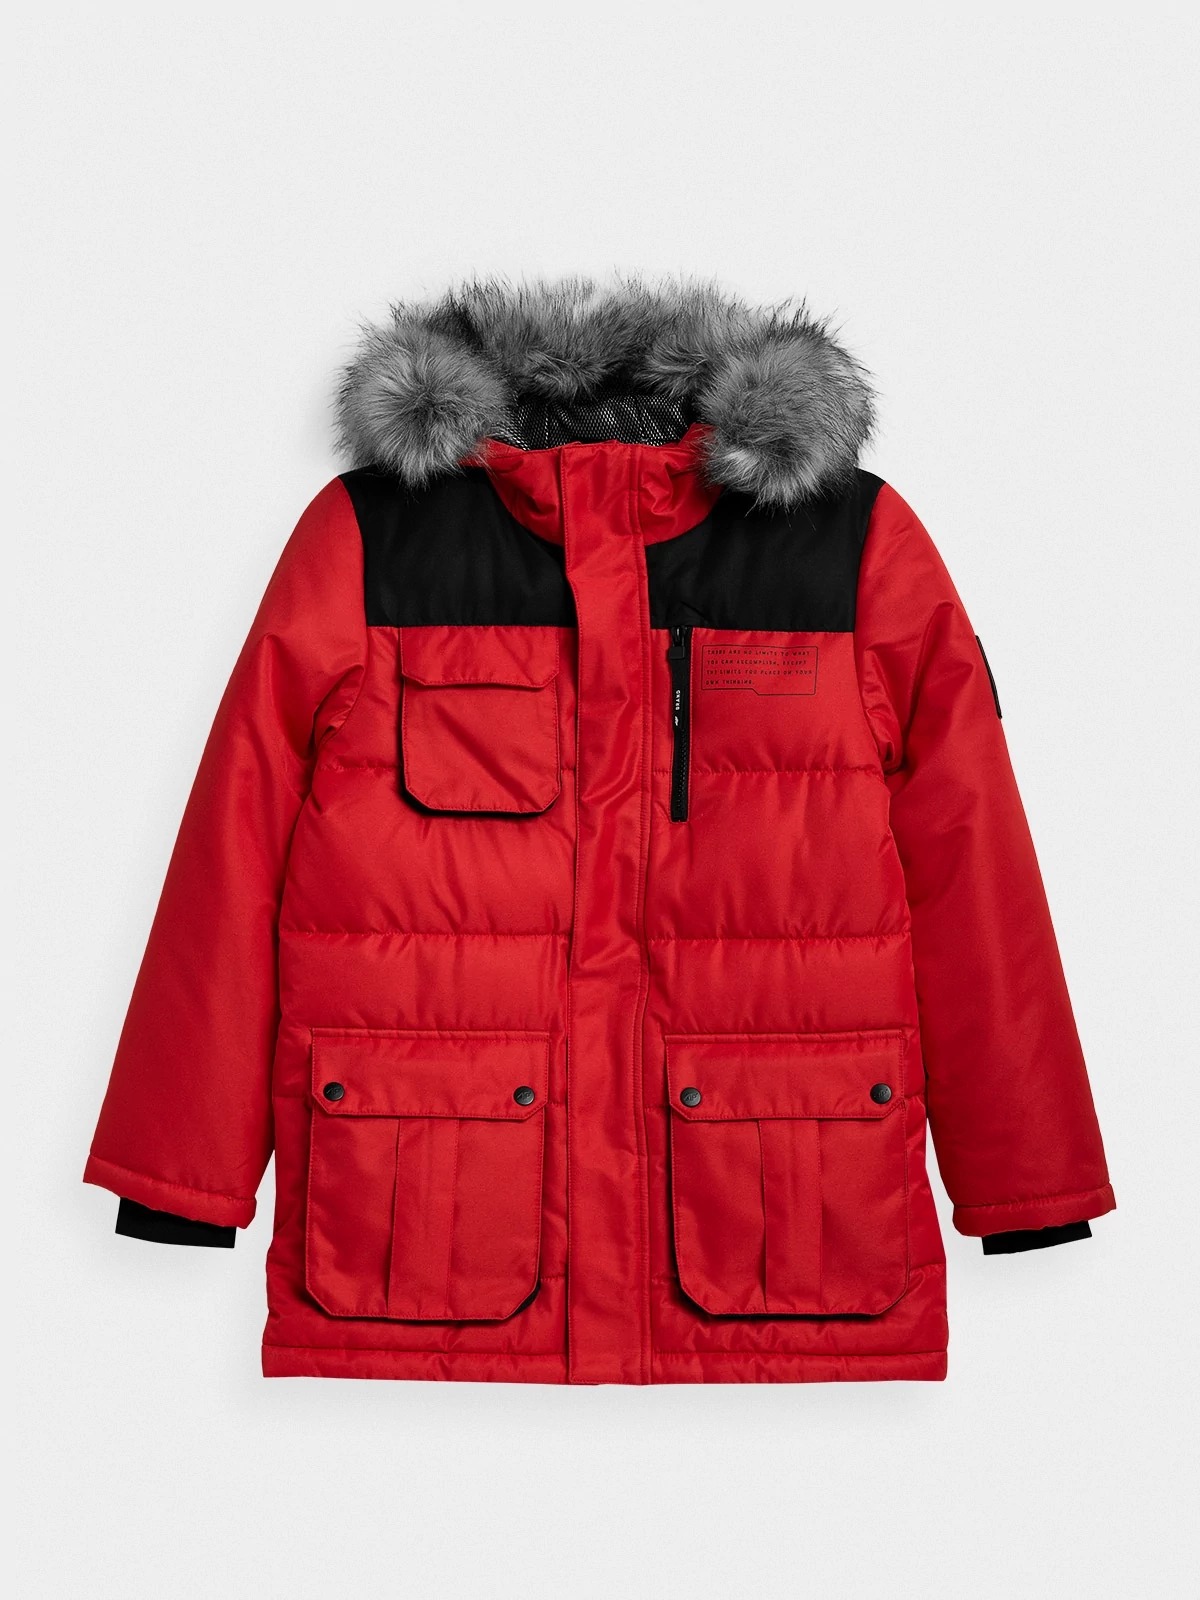 фото Куртка 4f boy's jackets hjz21-jkum001-62s цв.красный р. 140